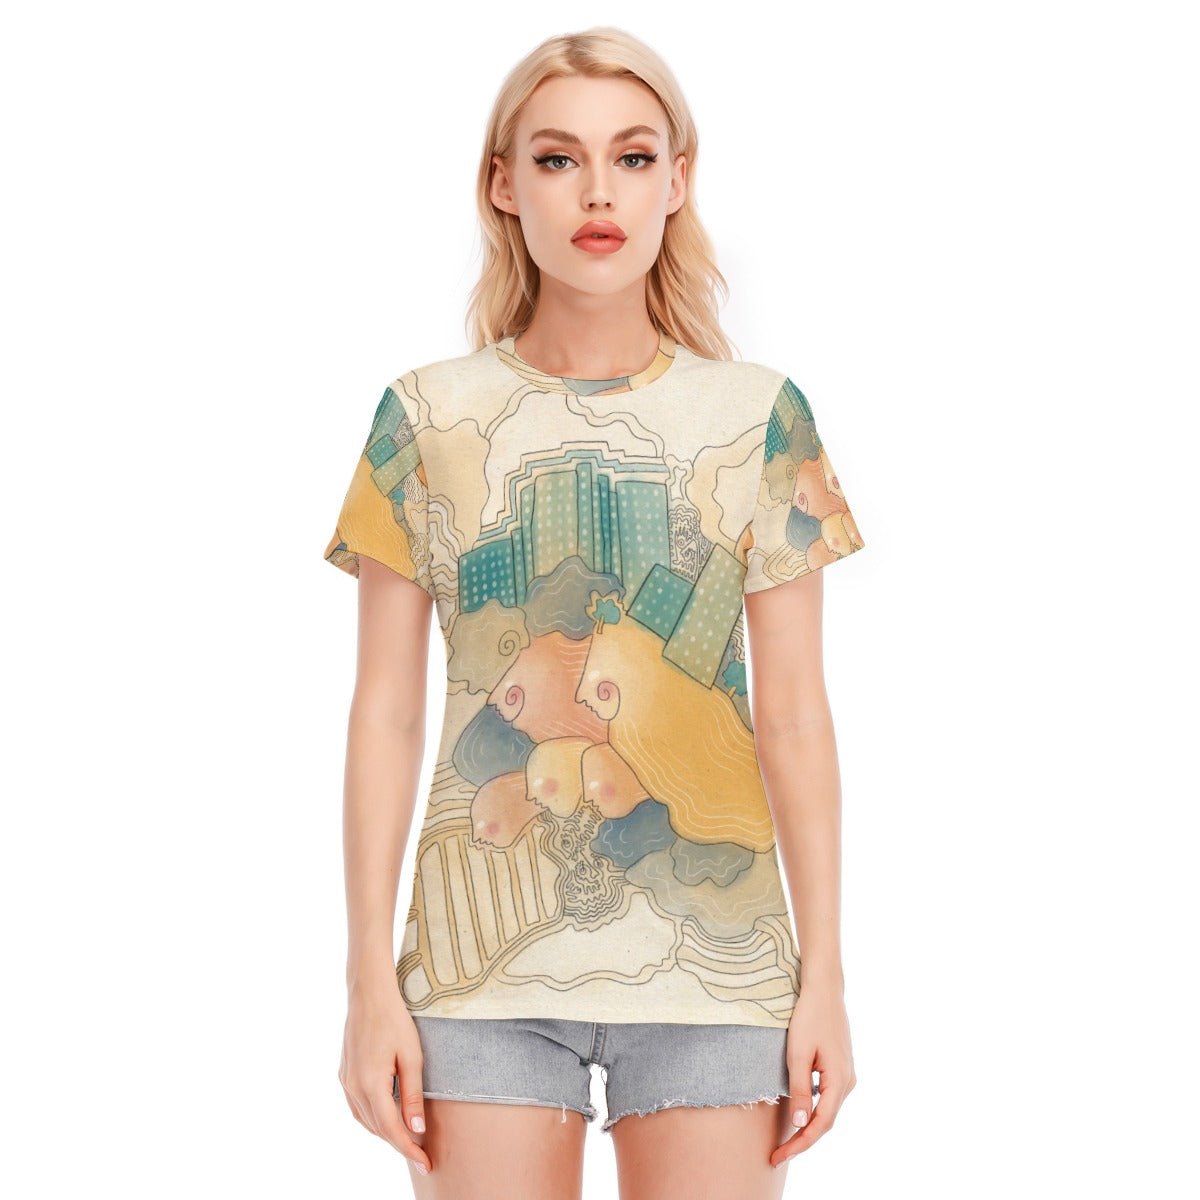 Women's Organic Cotton T Shirts - Organic Cotton Shirt Womens